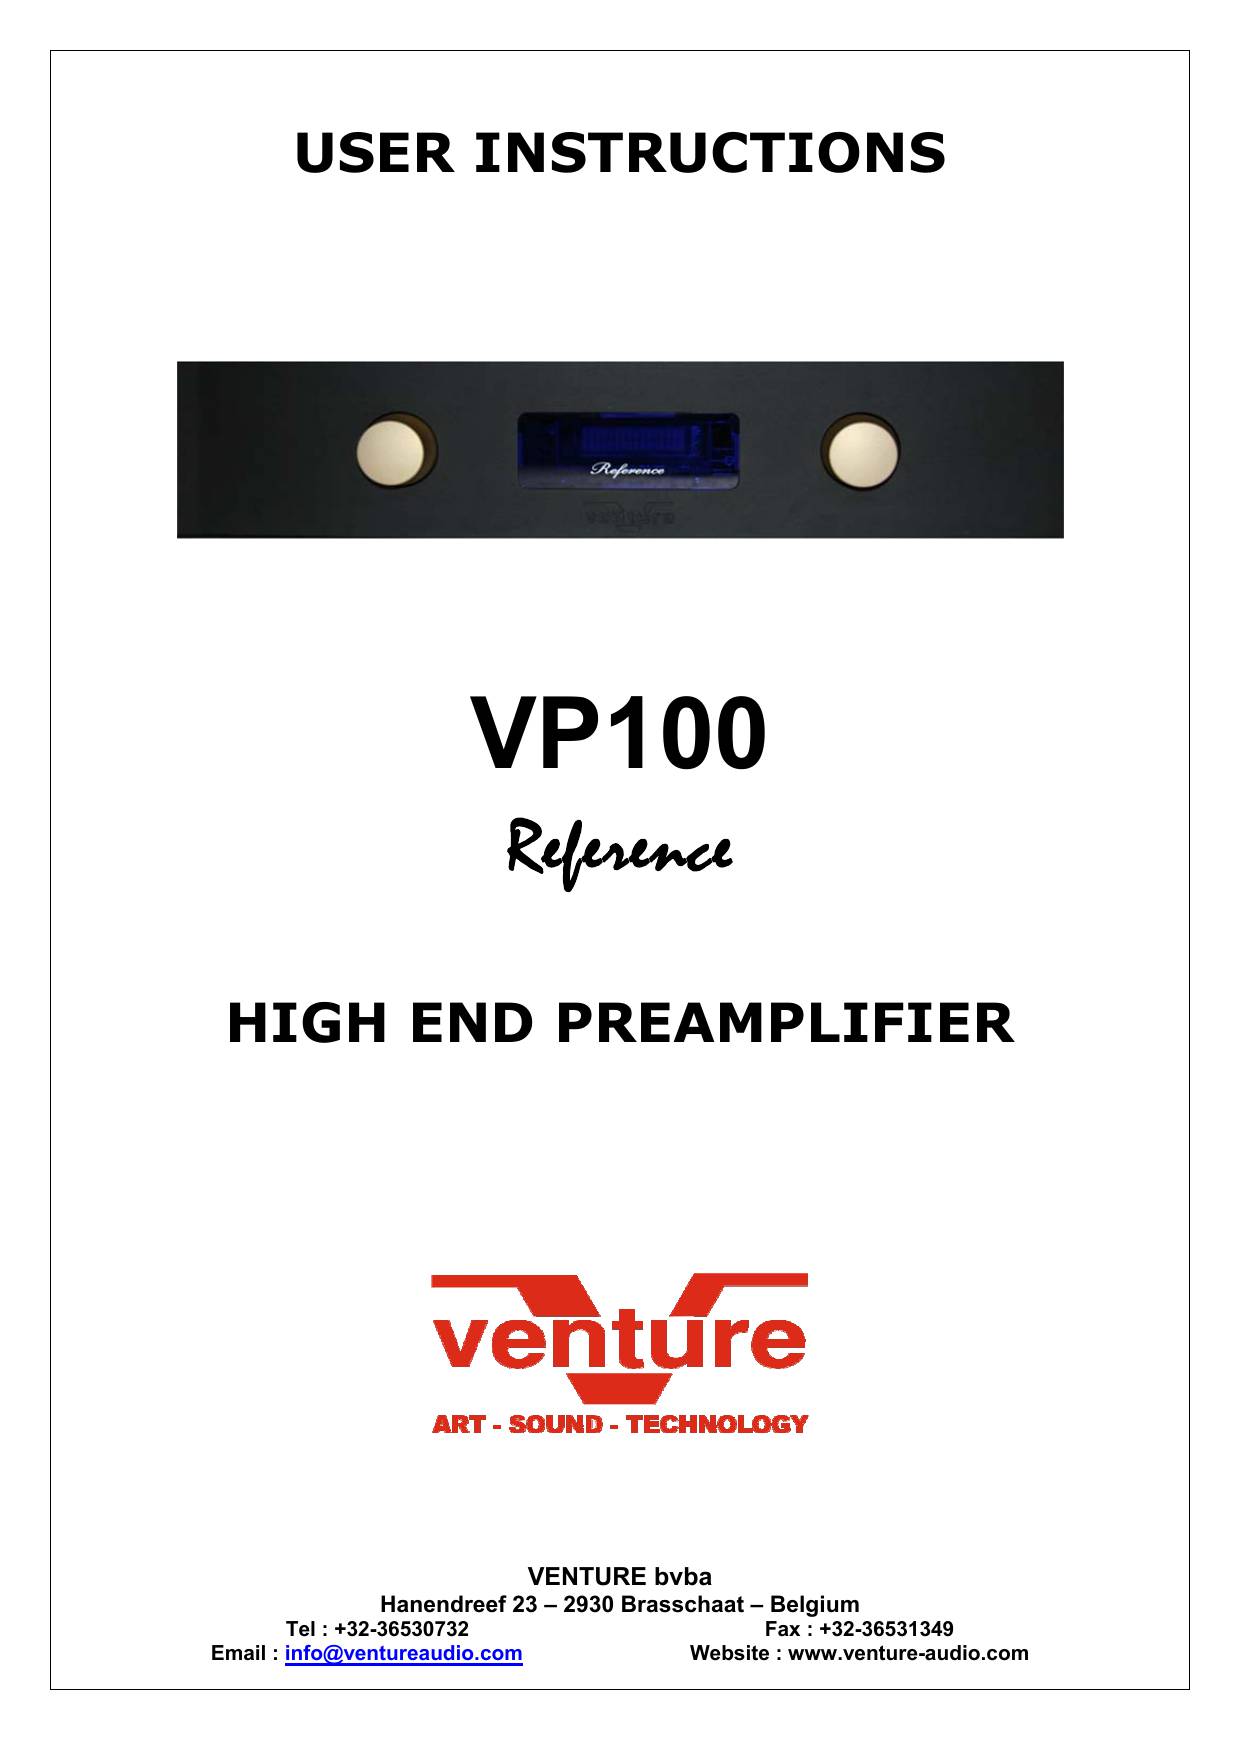 Venture VP100L